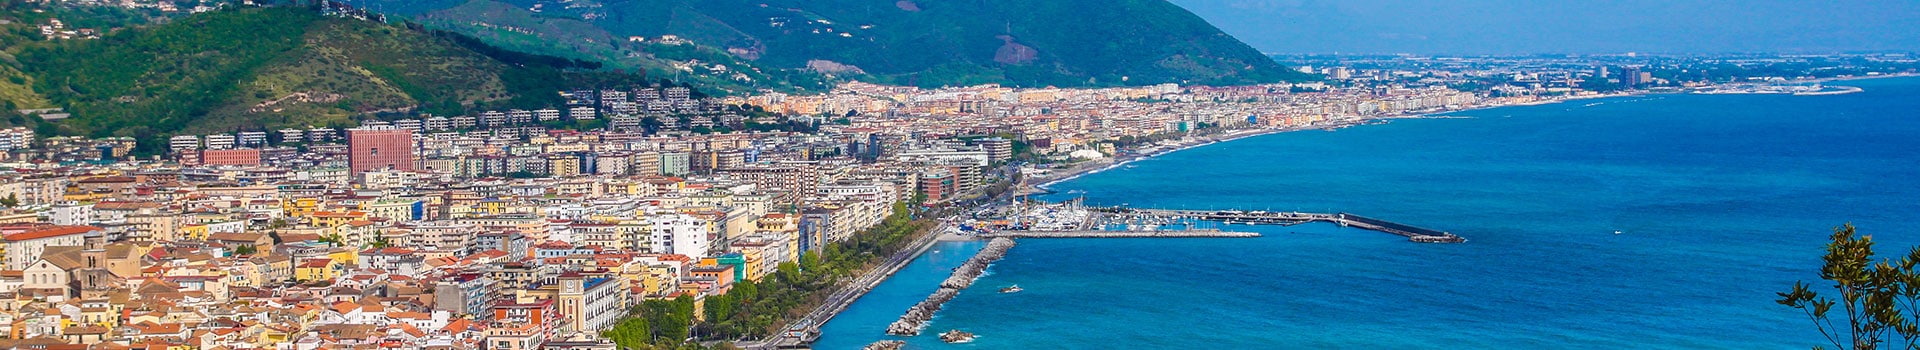 Billetes de Barco de Palermo a Salerno